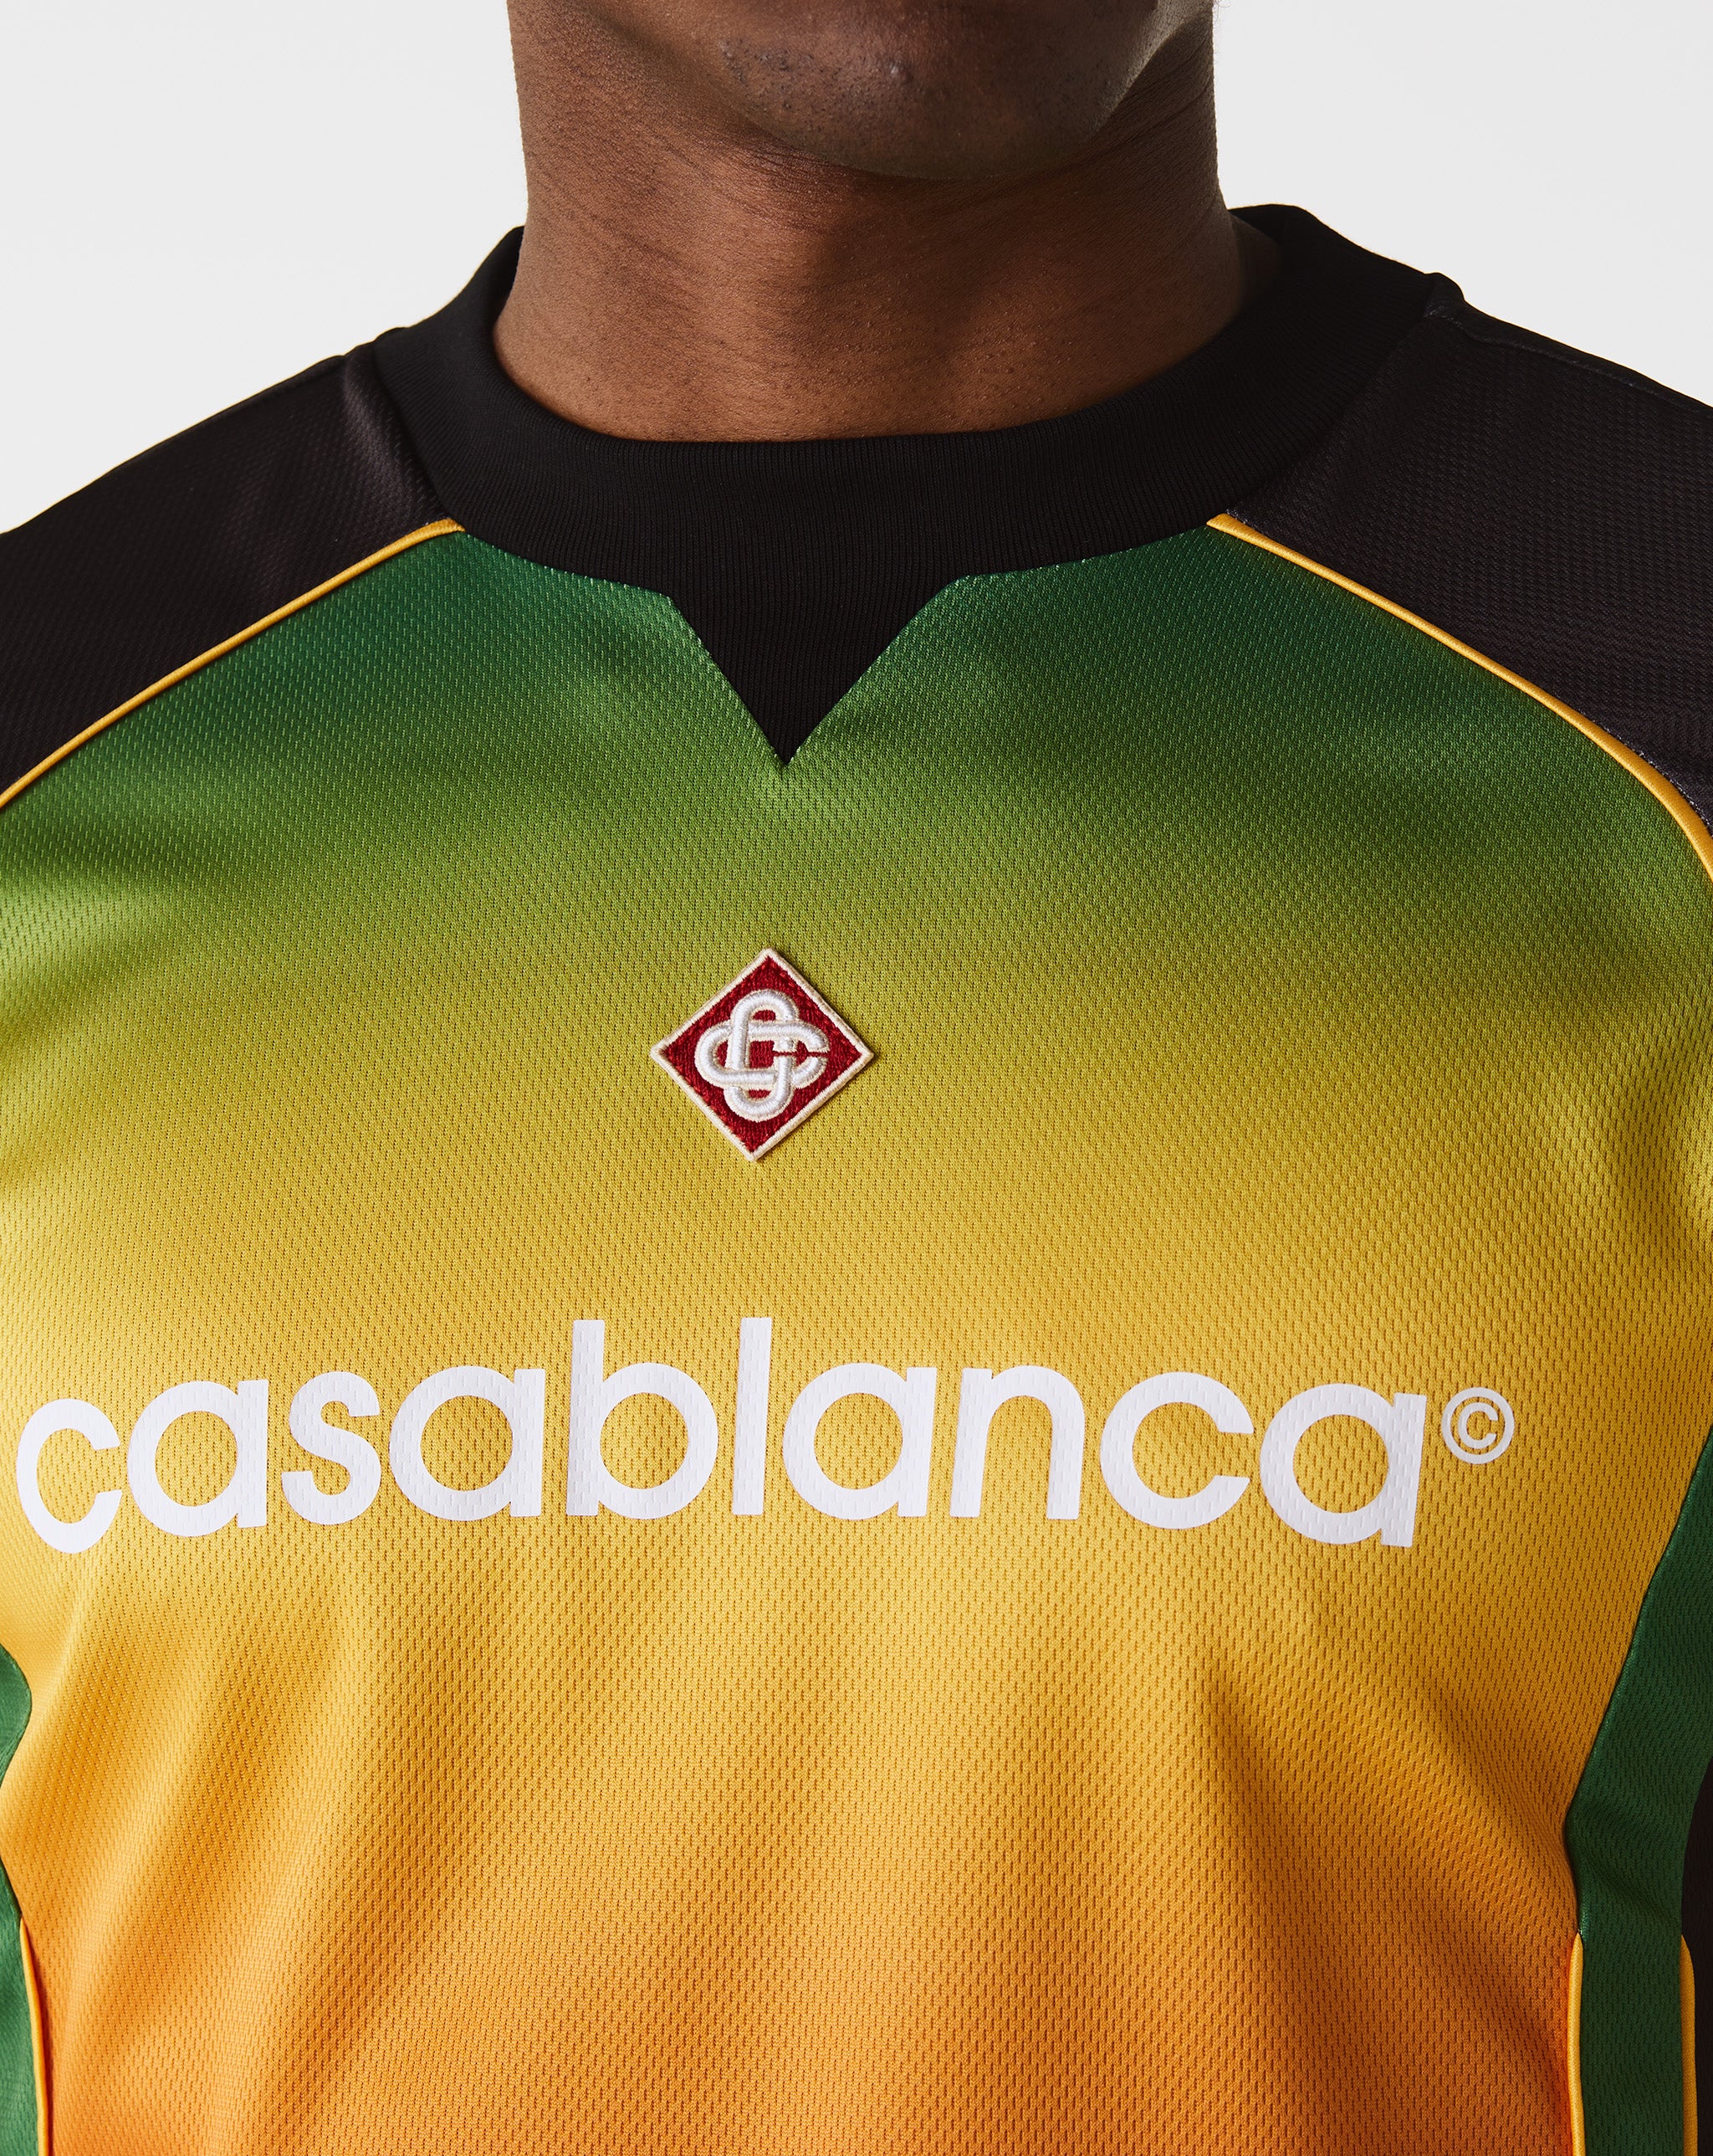 Casablanca Mens Football Shirt  - Cheap Urlfreeze Jordan outlet